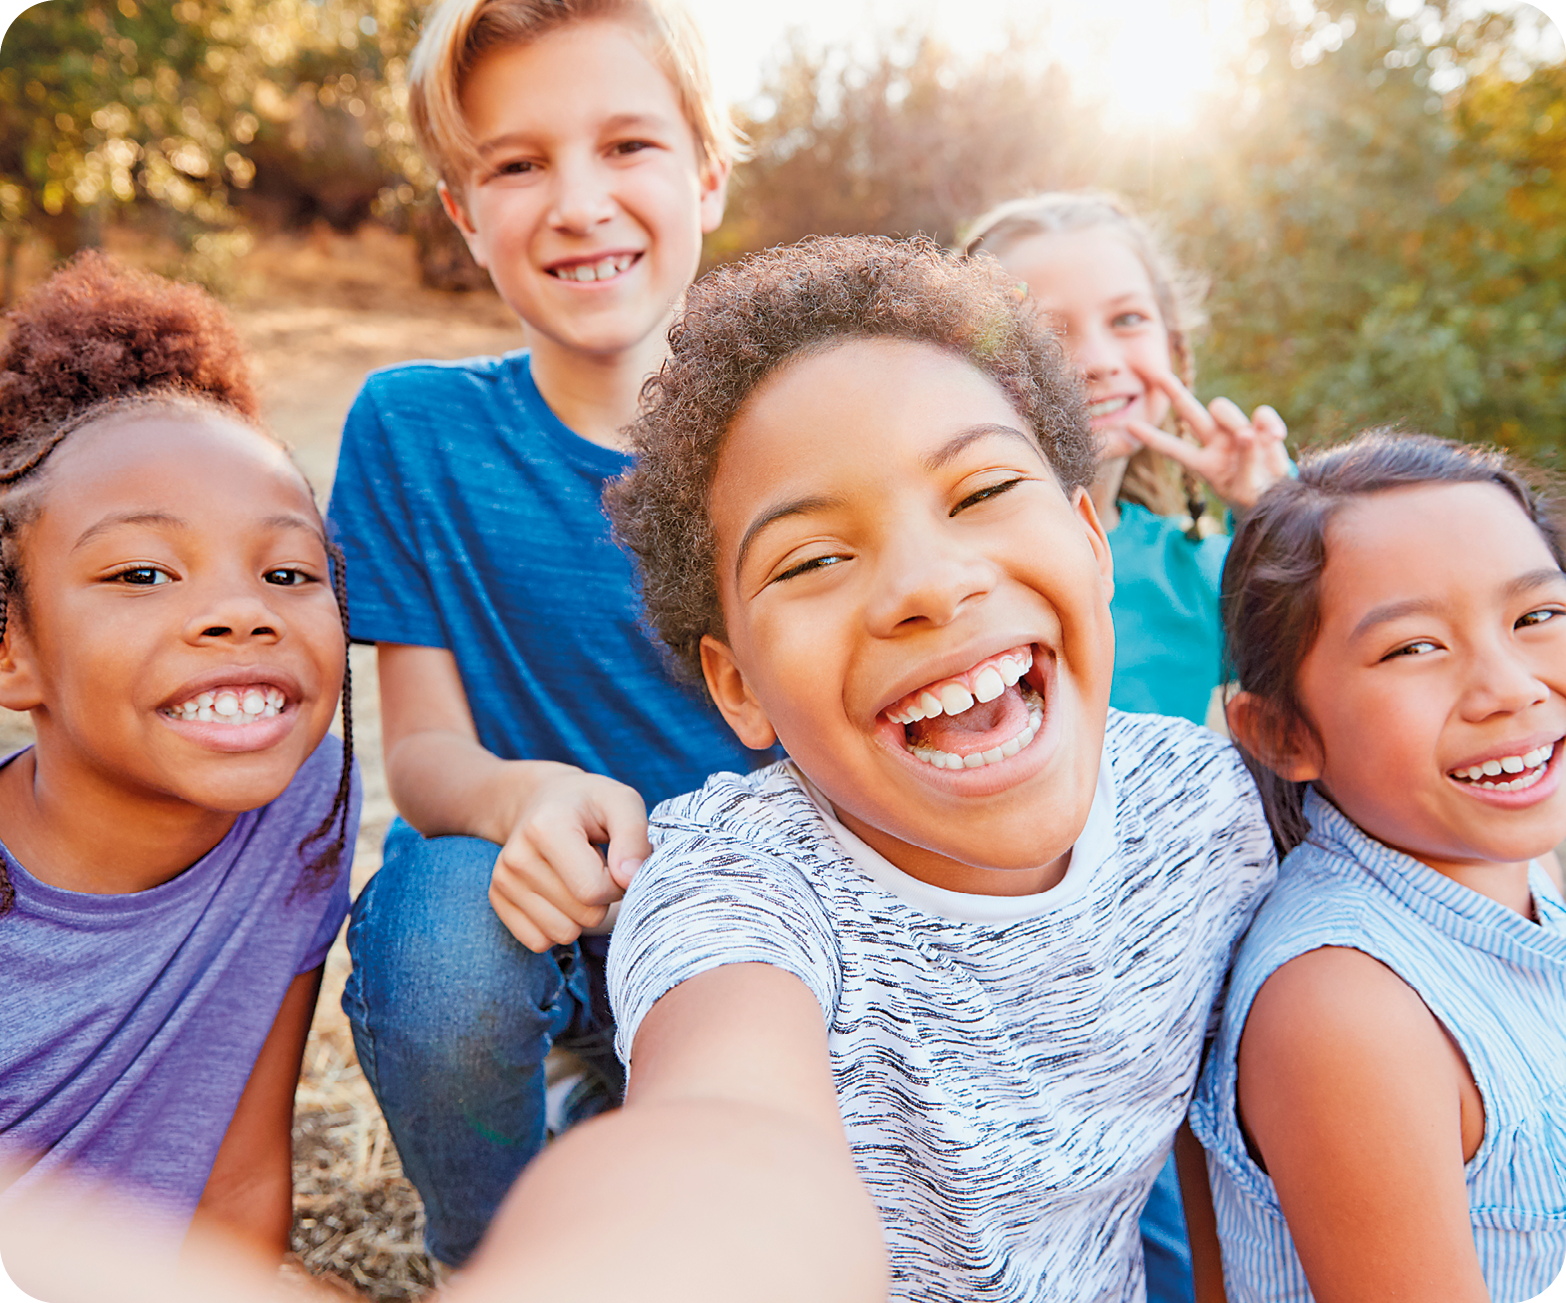 Fotografia. Destaque para cinco crianças com roupas coloridas. A que está no centro da imagem tira selfie enquanto todas olham para a câmera e sorriem. Ao fundo há um terreno com vegetação verde.